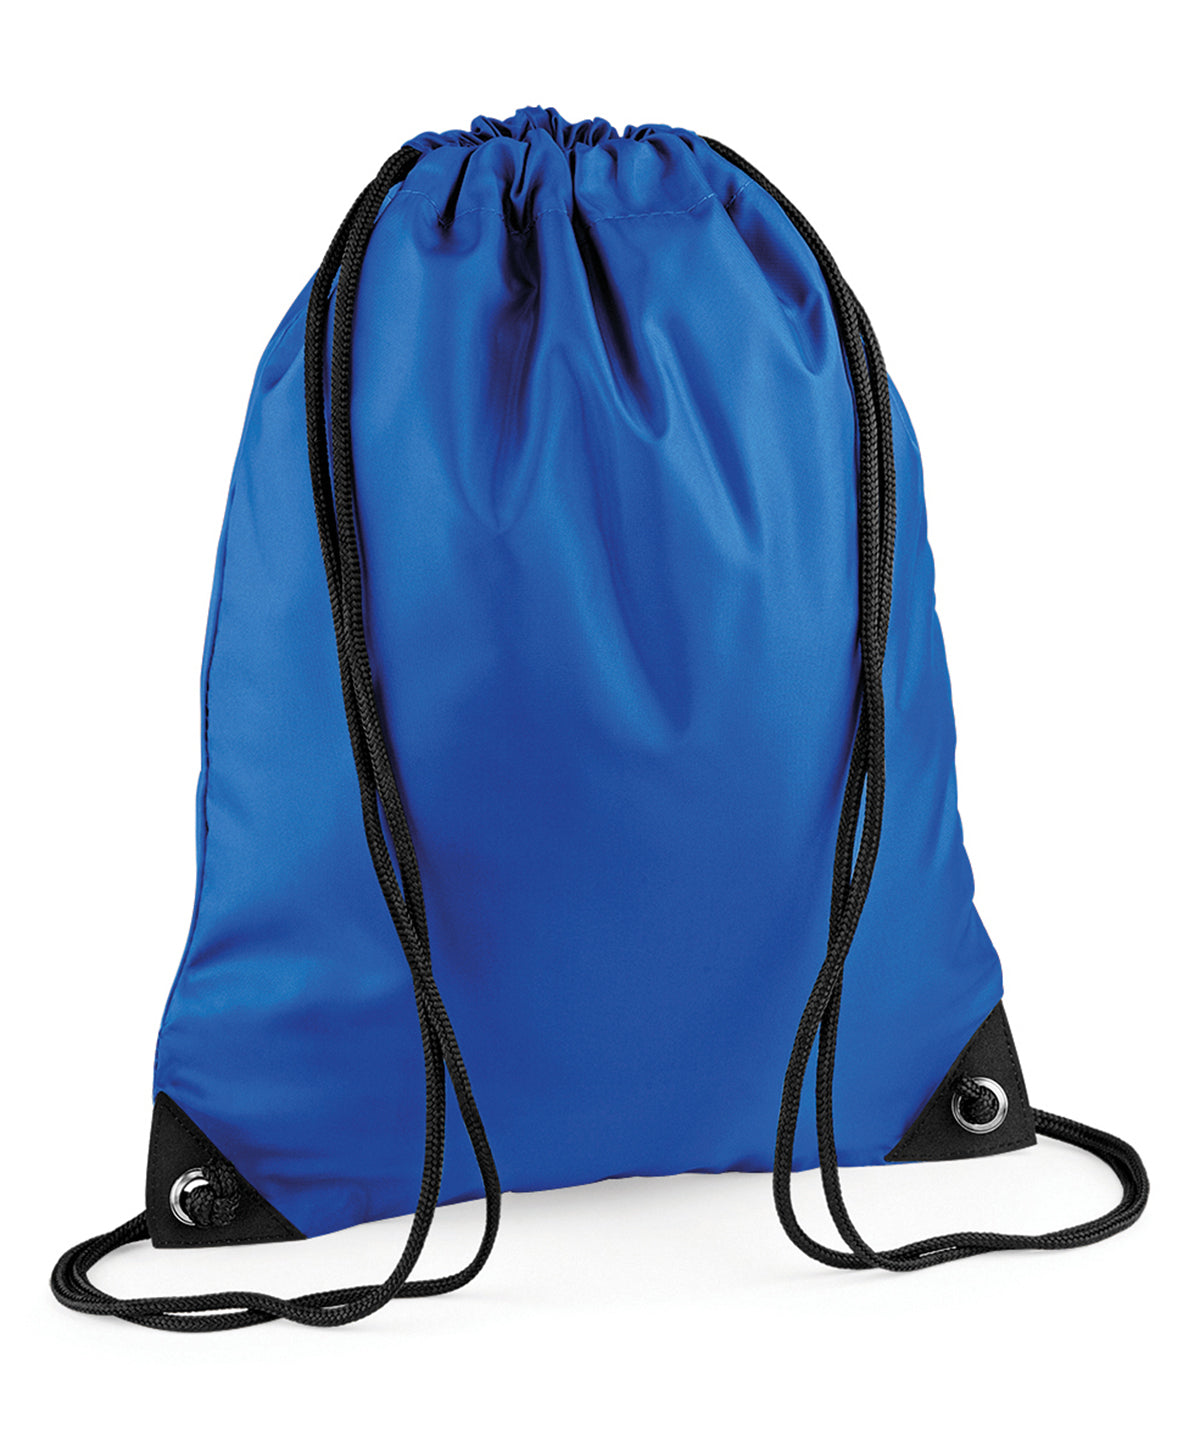 Personalised Bags - Royal Bagbase Premium gymsac